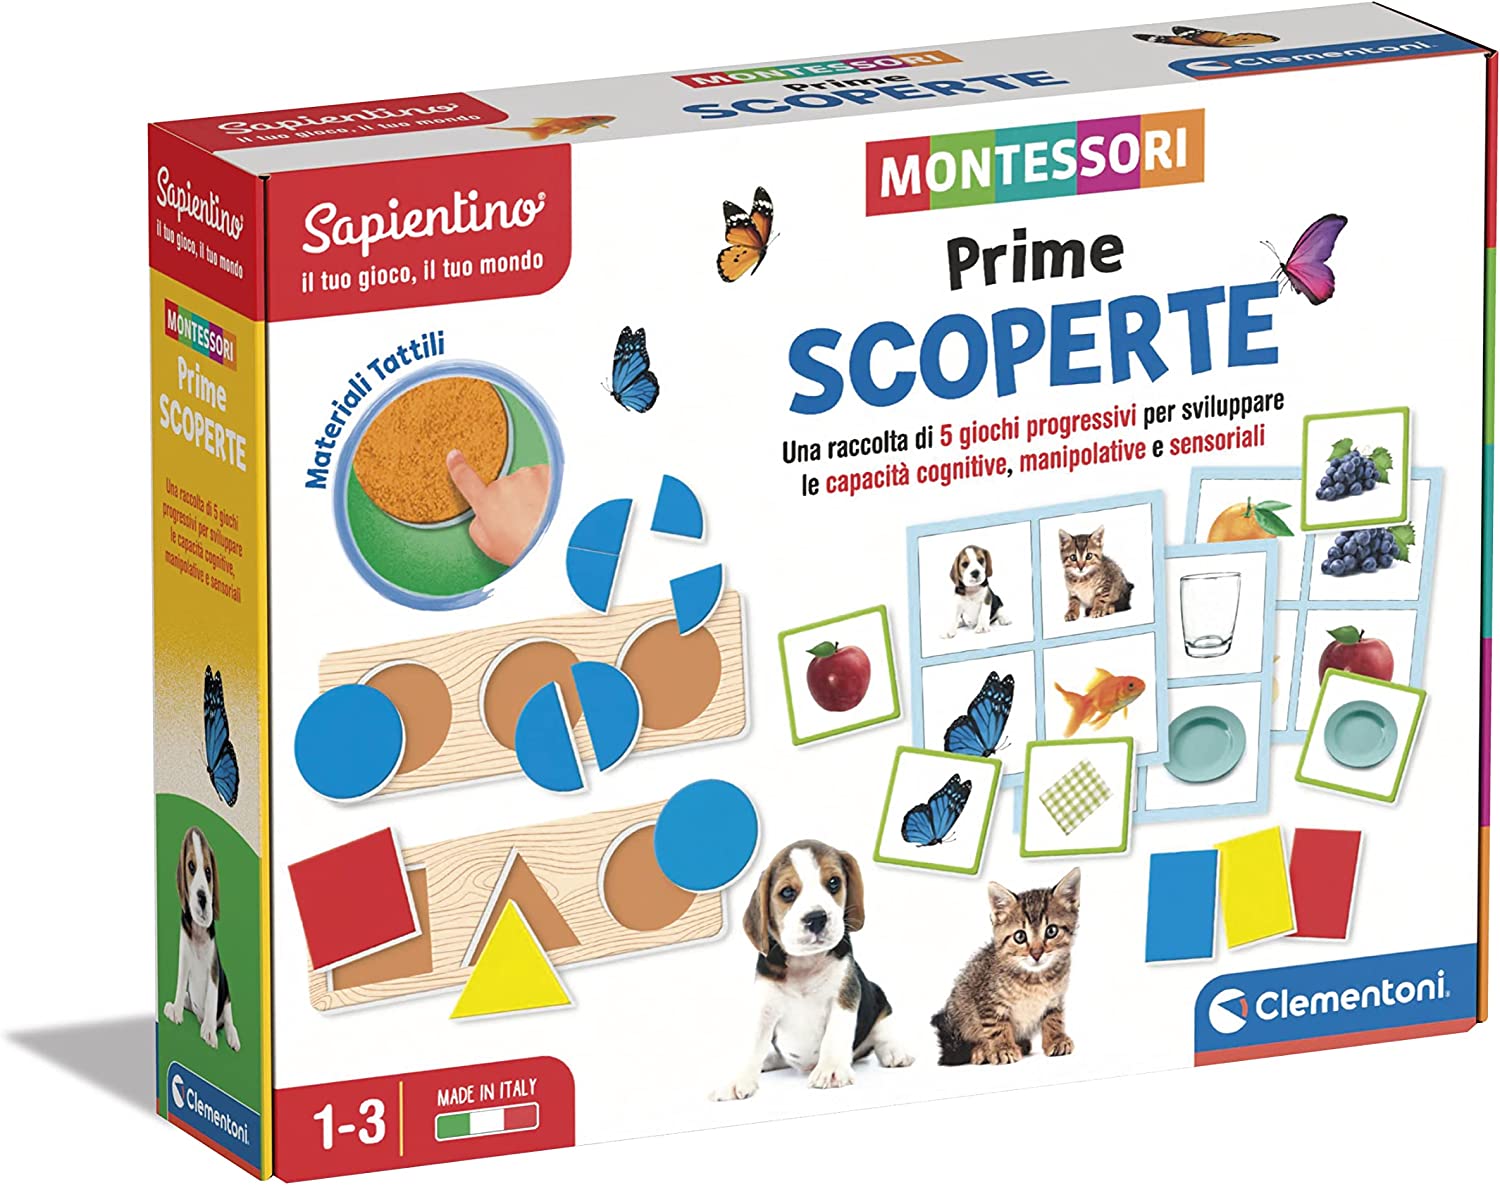 Montessori Első játékaim felfedező készlet